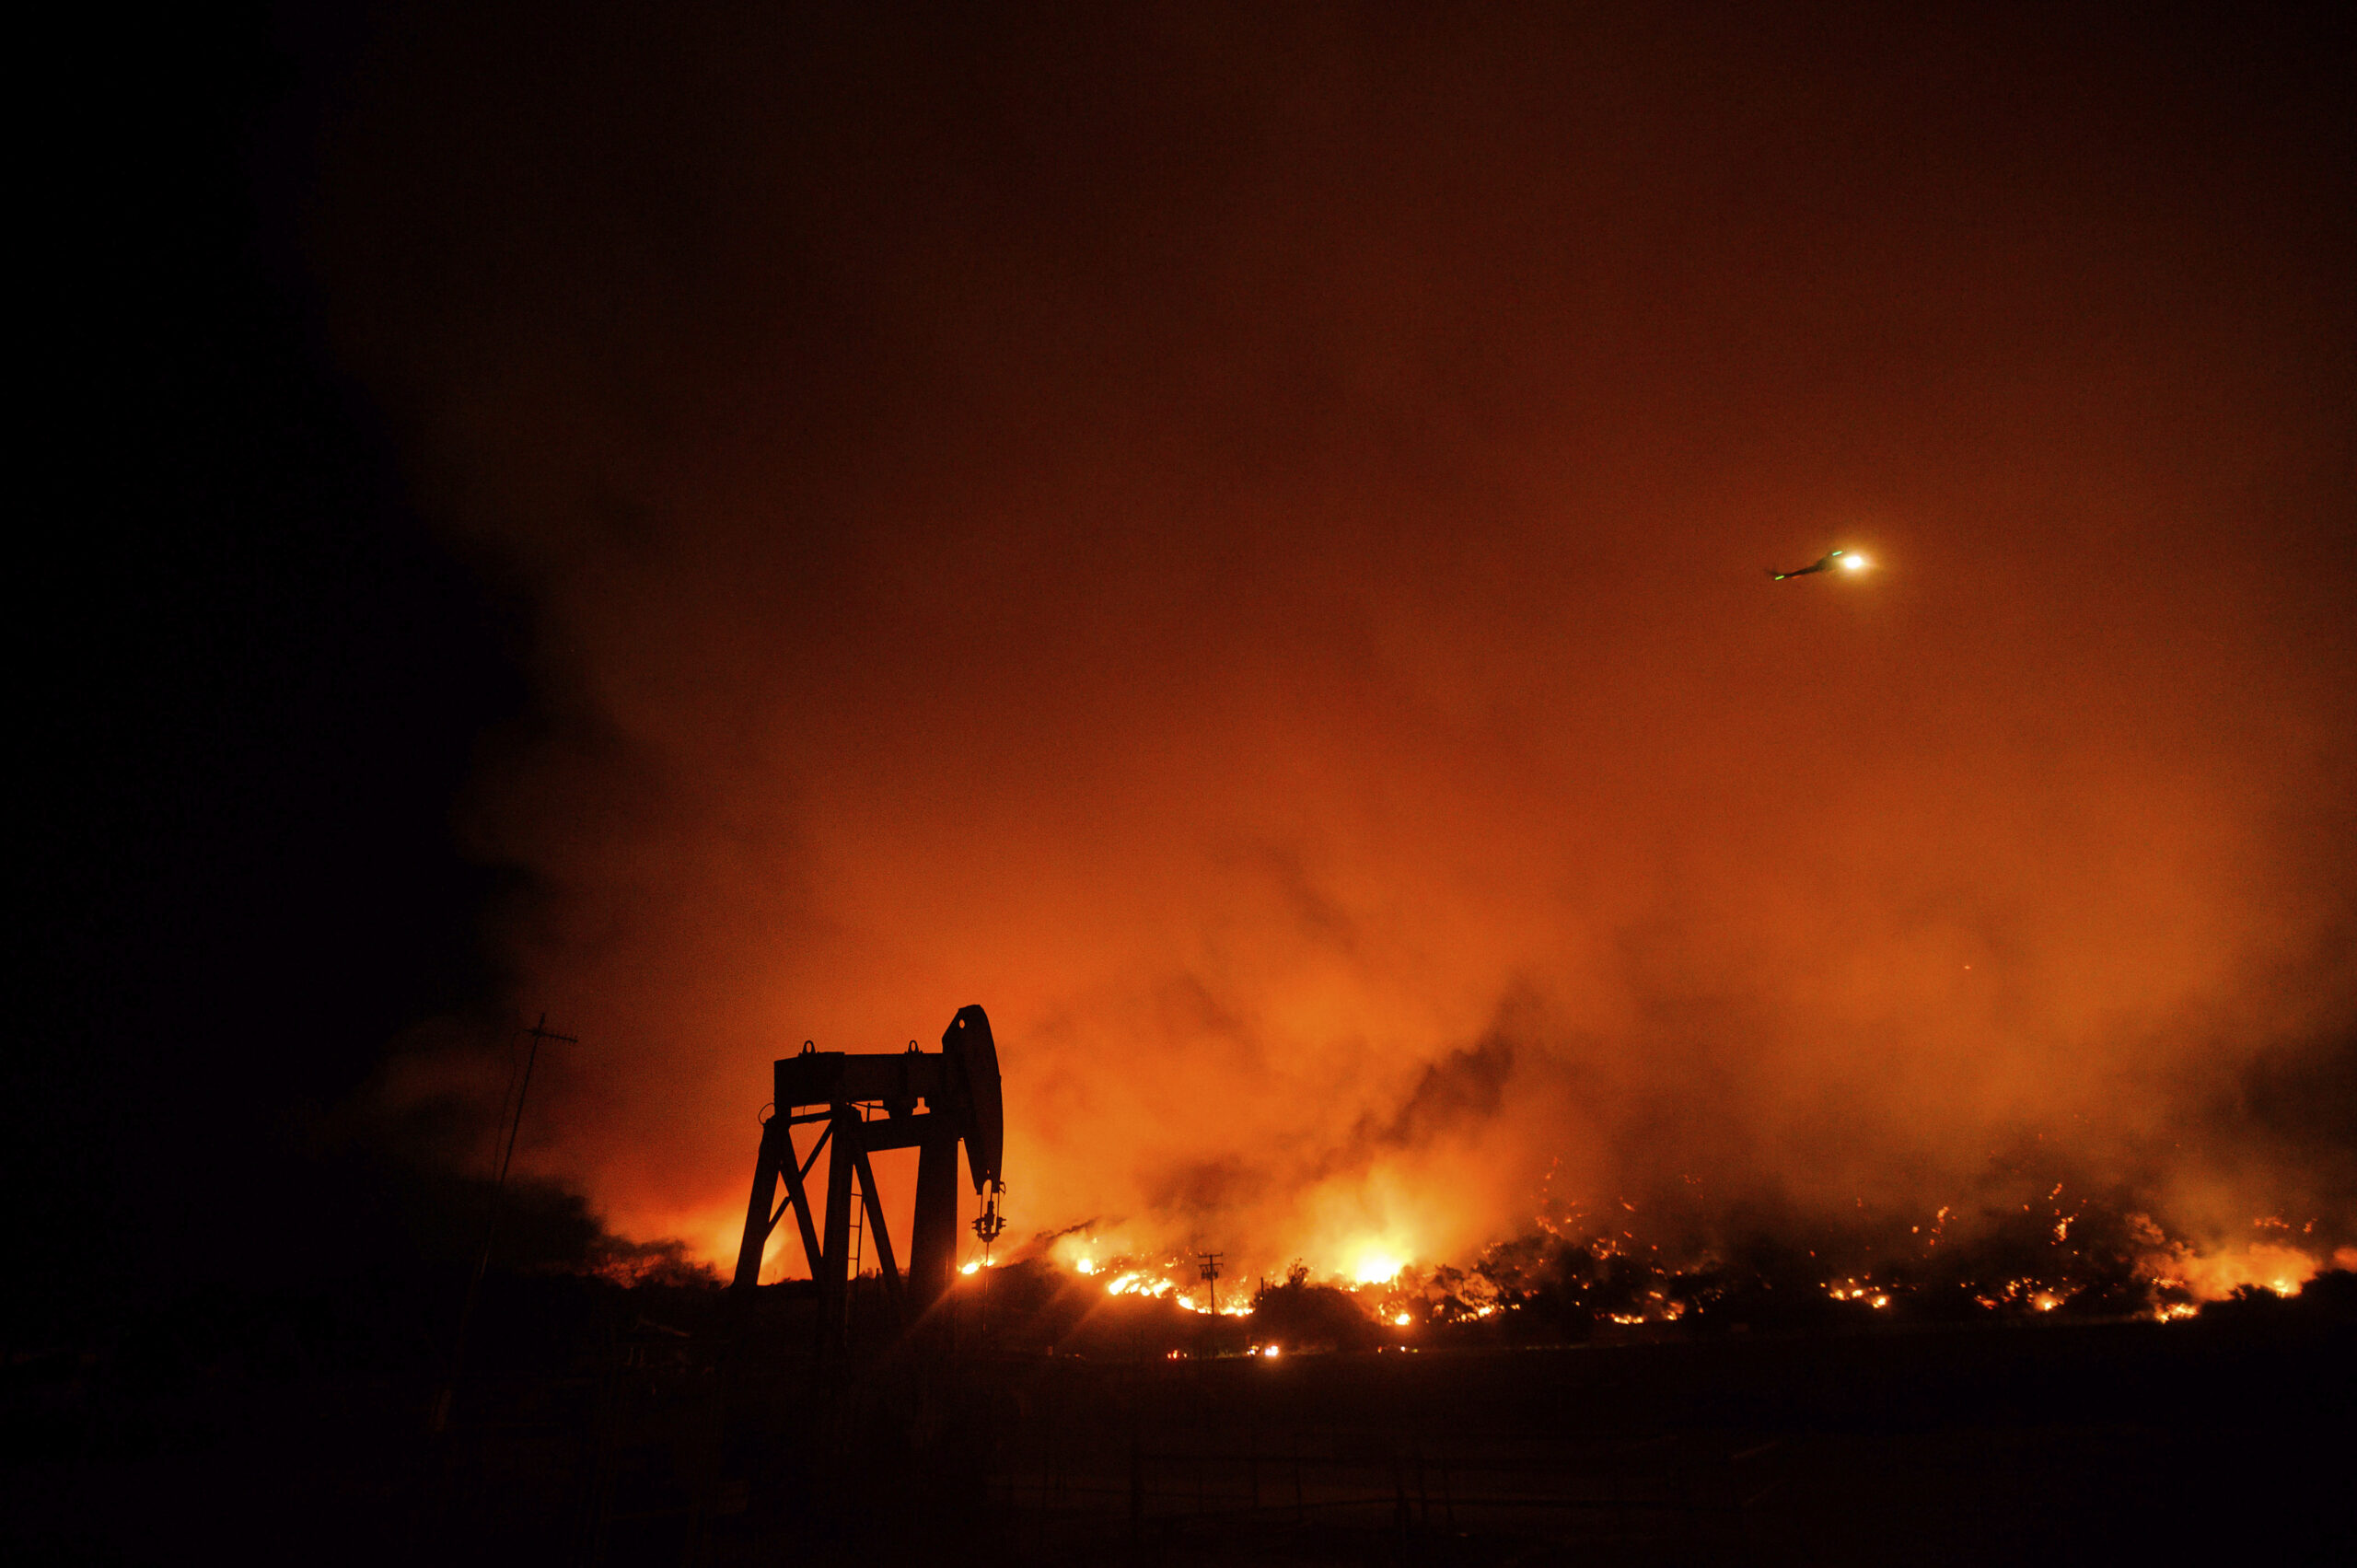 Llamas anaranjadas de un incendio forestal en California ardiendo por la noche en la distancia, con la silueta de una bomba de petróleo y gas en primer plano.